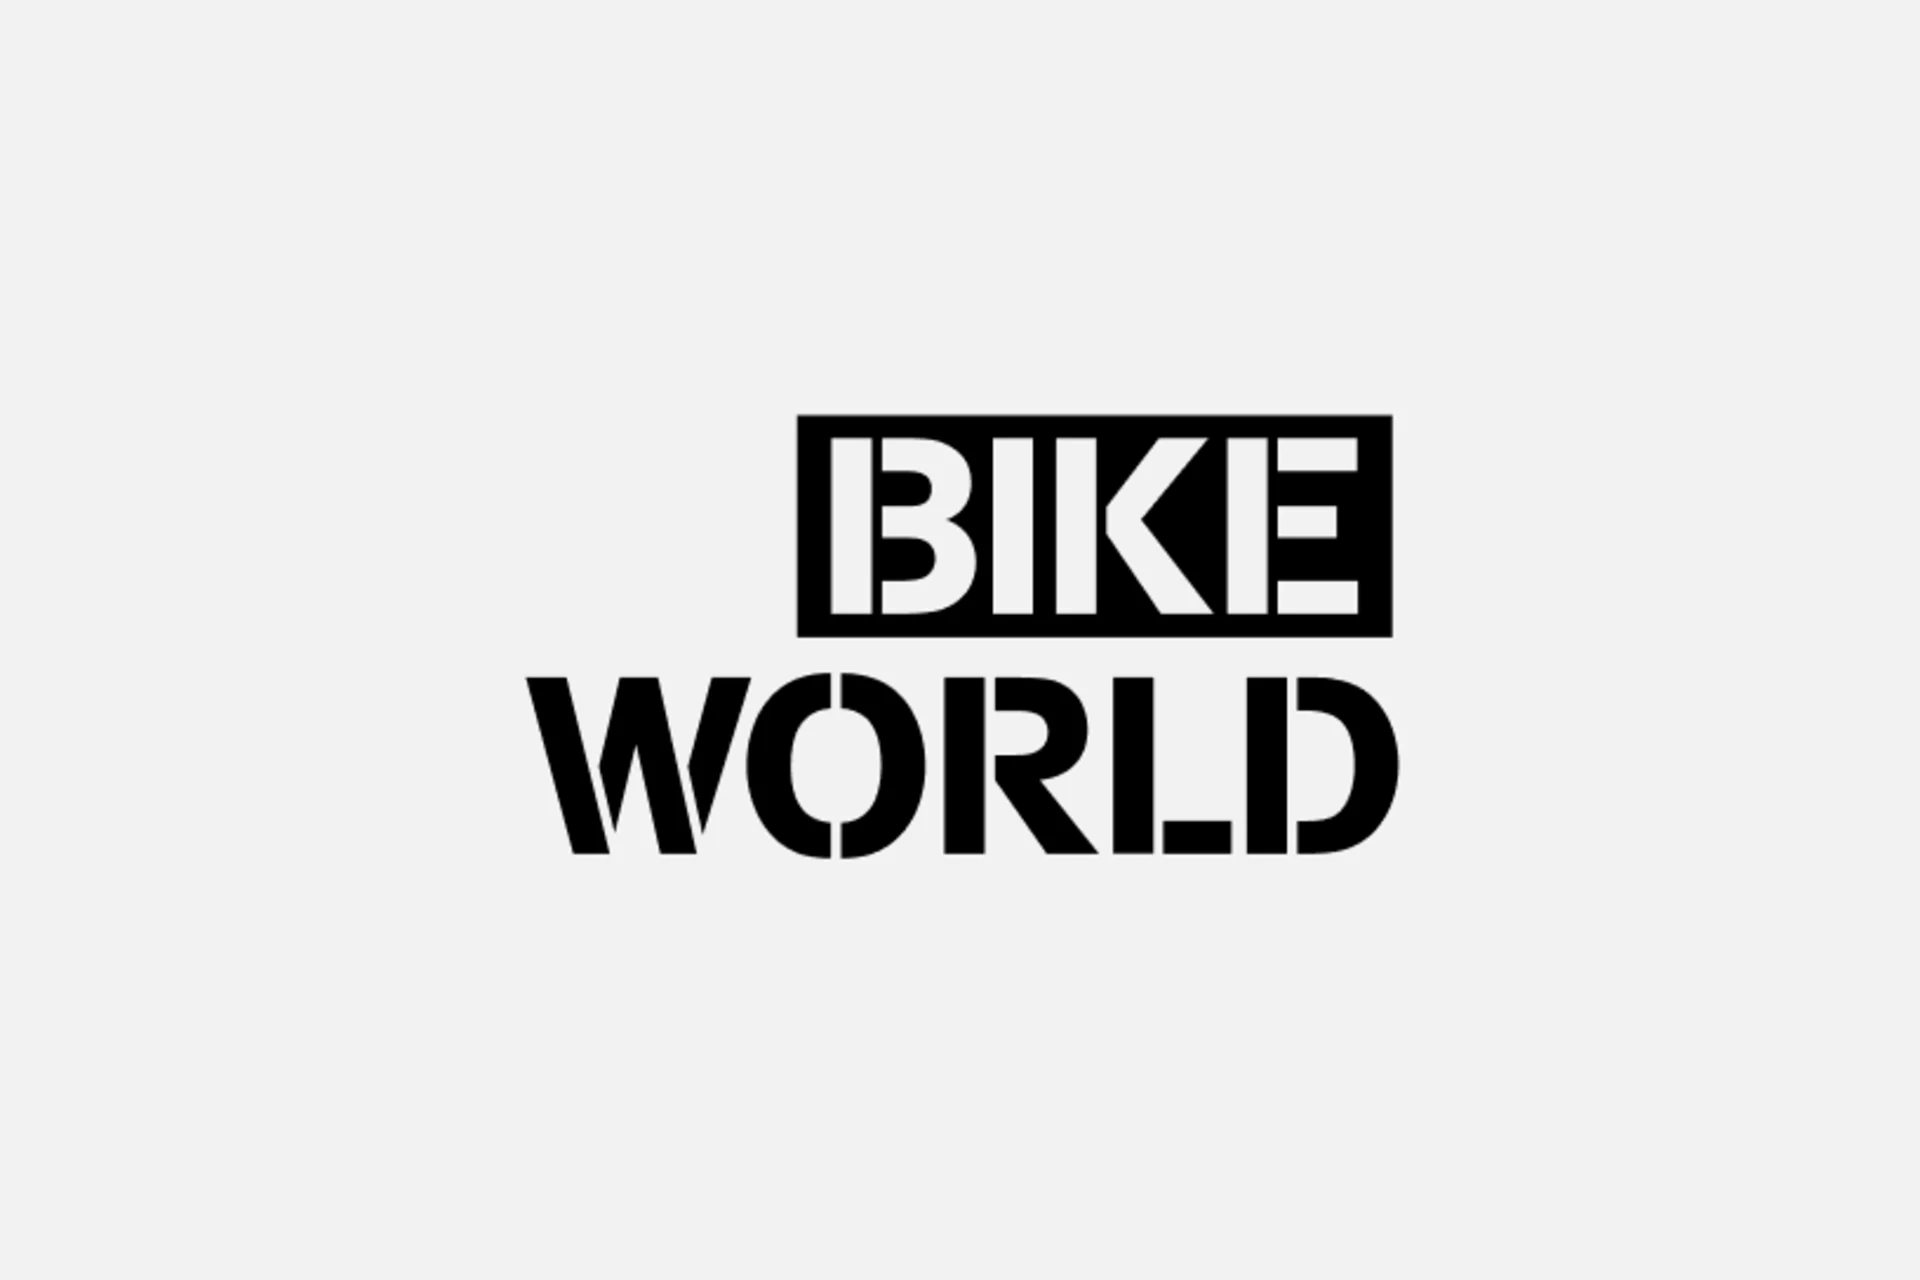 Bike World logo